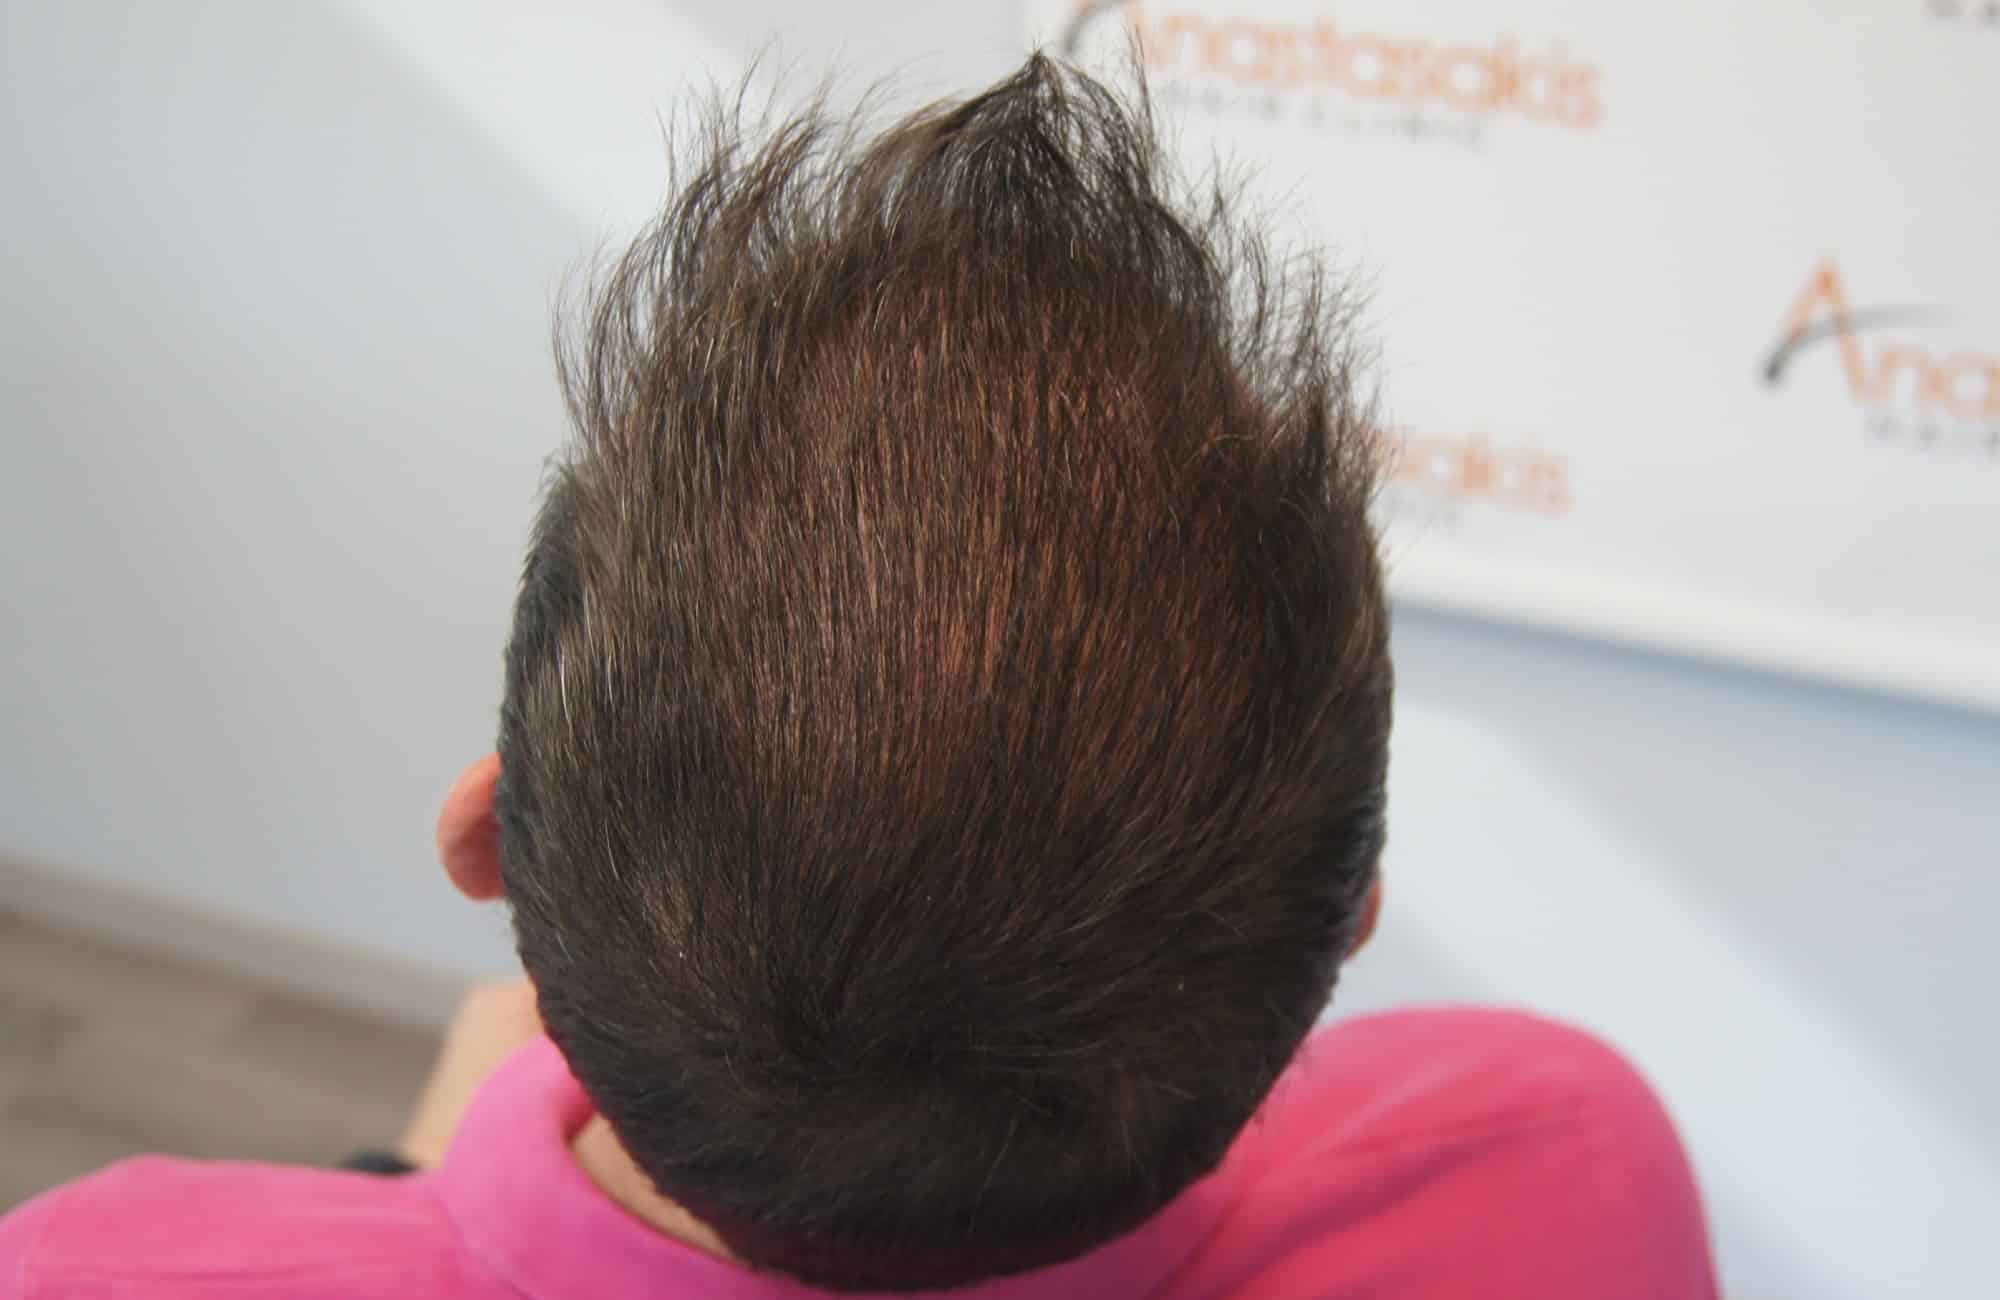 περιστατικο μετα τη μεταμόσχευση μαλλιων με 3200 fus στην anastasakis hair clinic 4